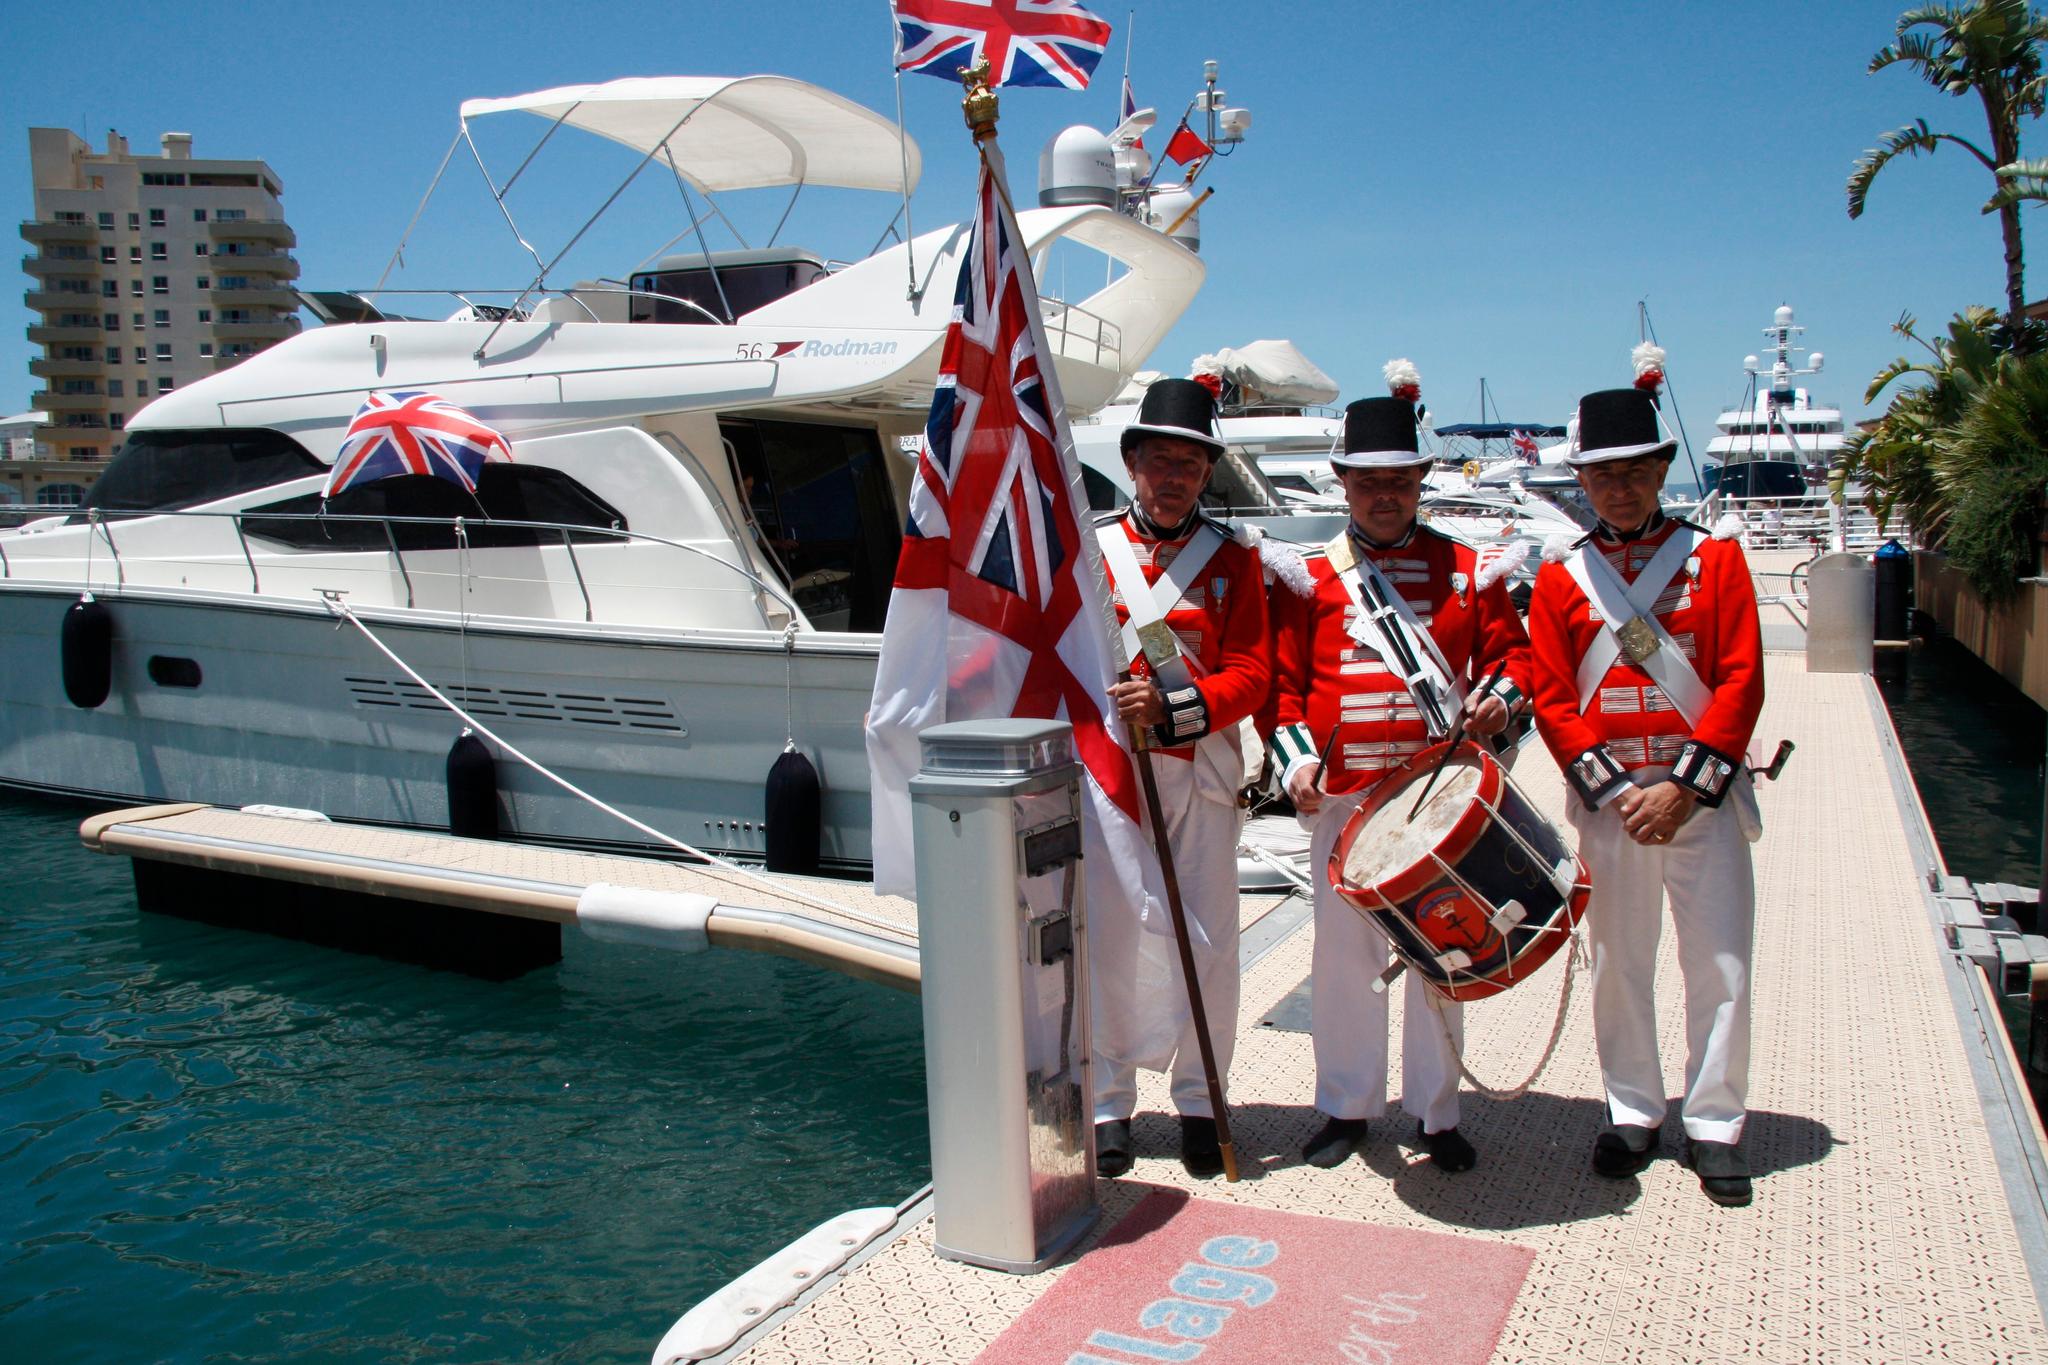 Britene benytter enhver anledning til å feire det britiske. Disse lokalpatriotene, kledd i historiske Royal Navy uniformer, forbereder båtparade rundt Klippen.